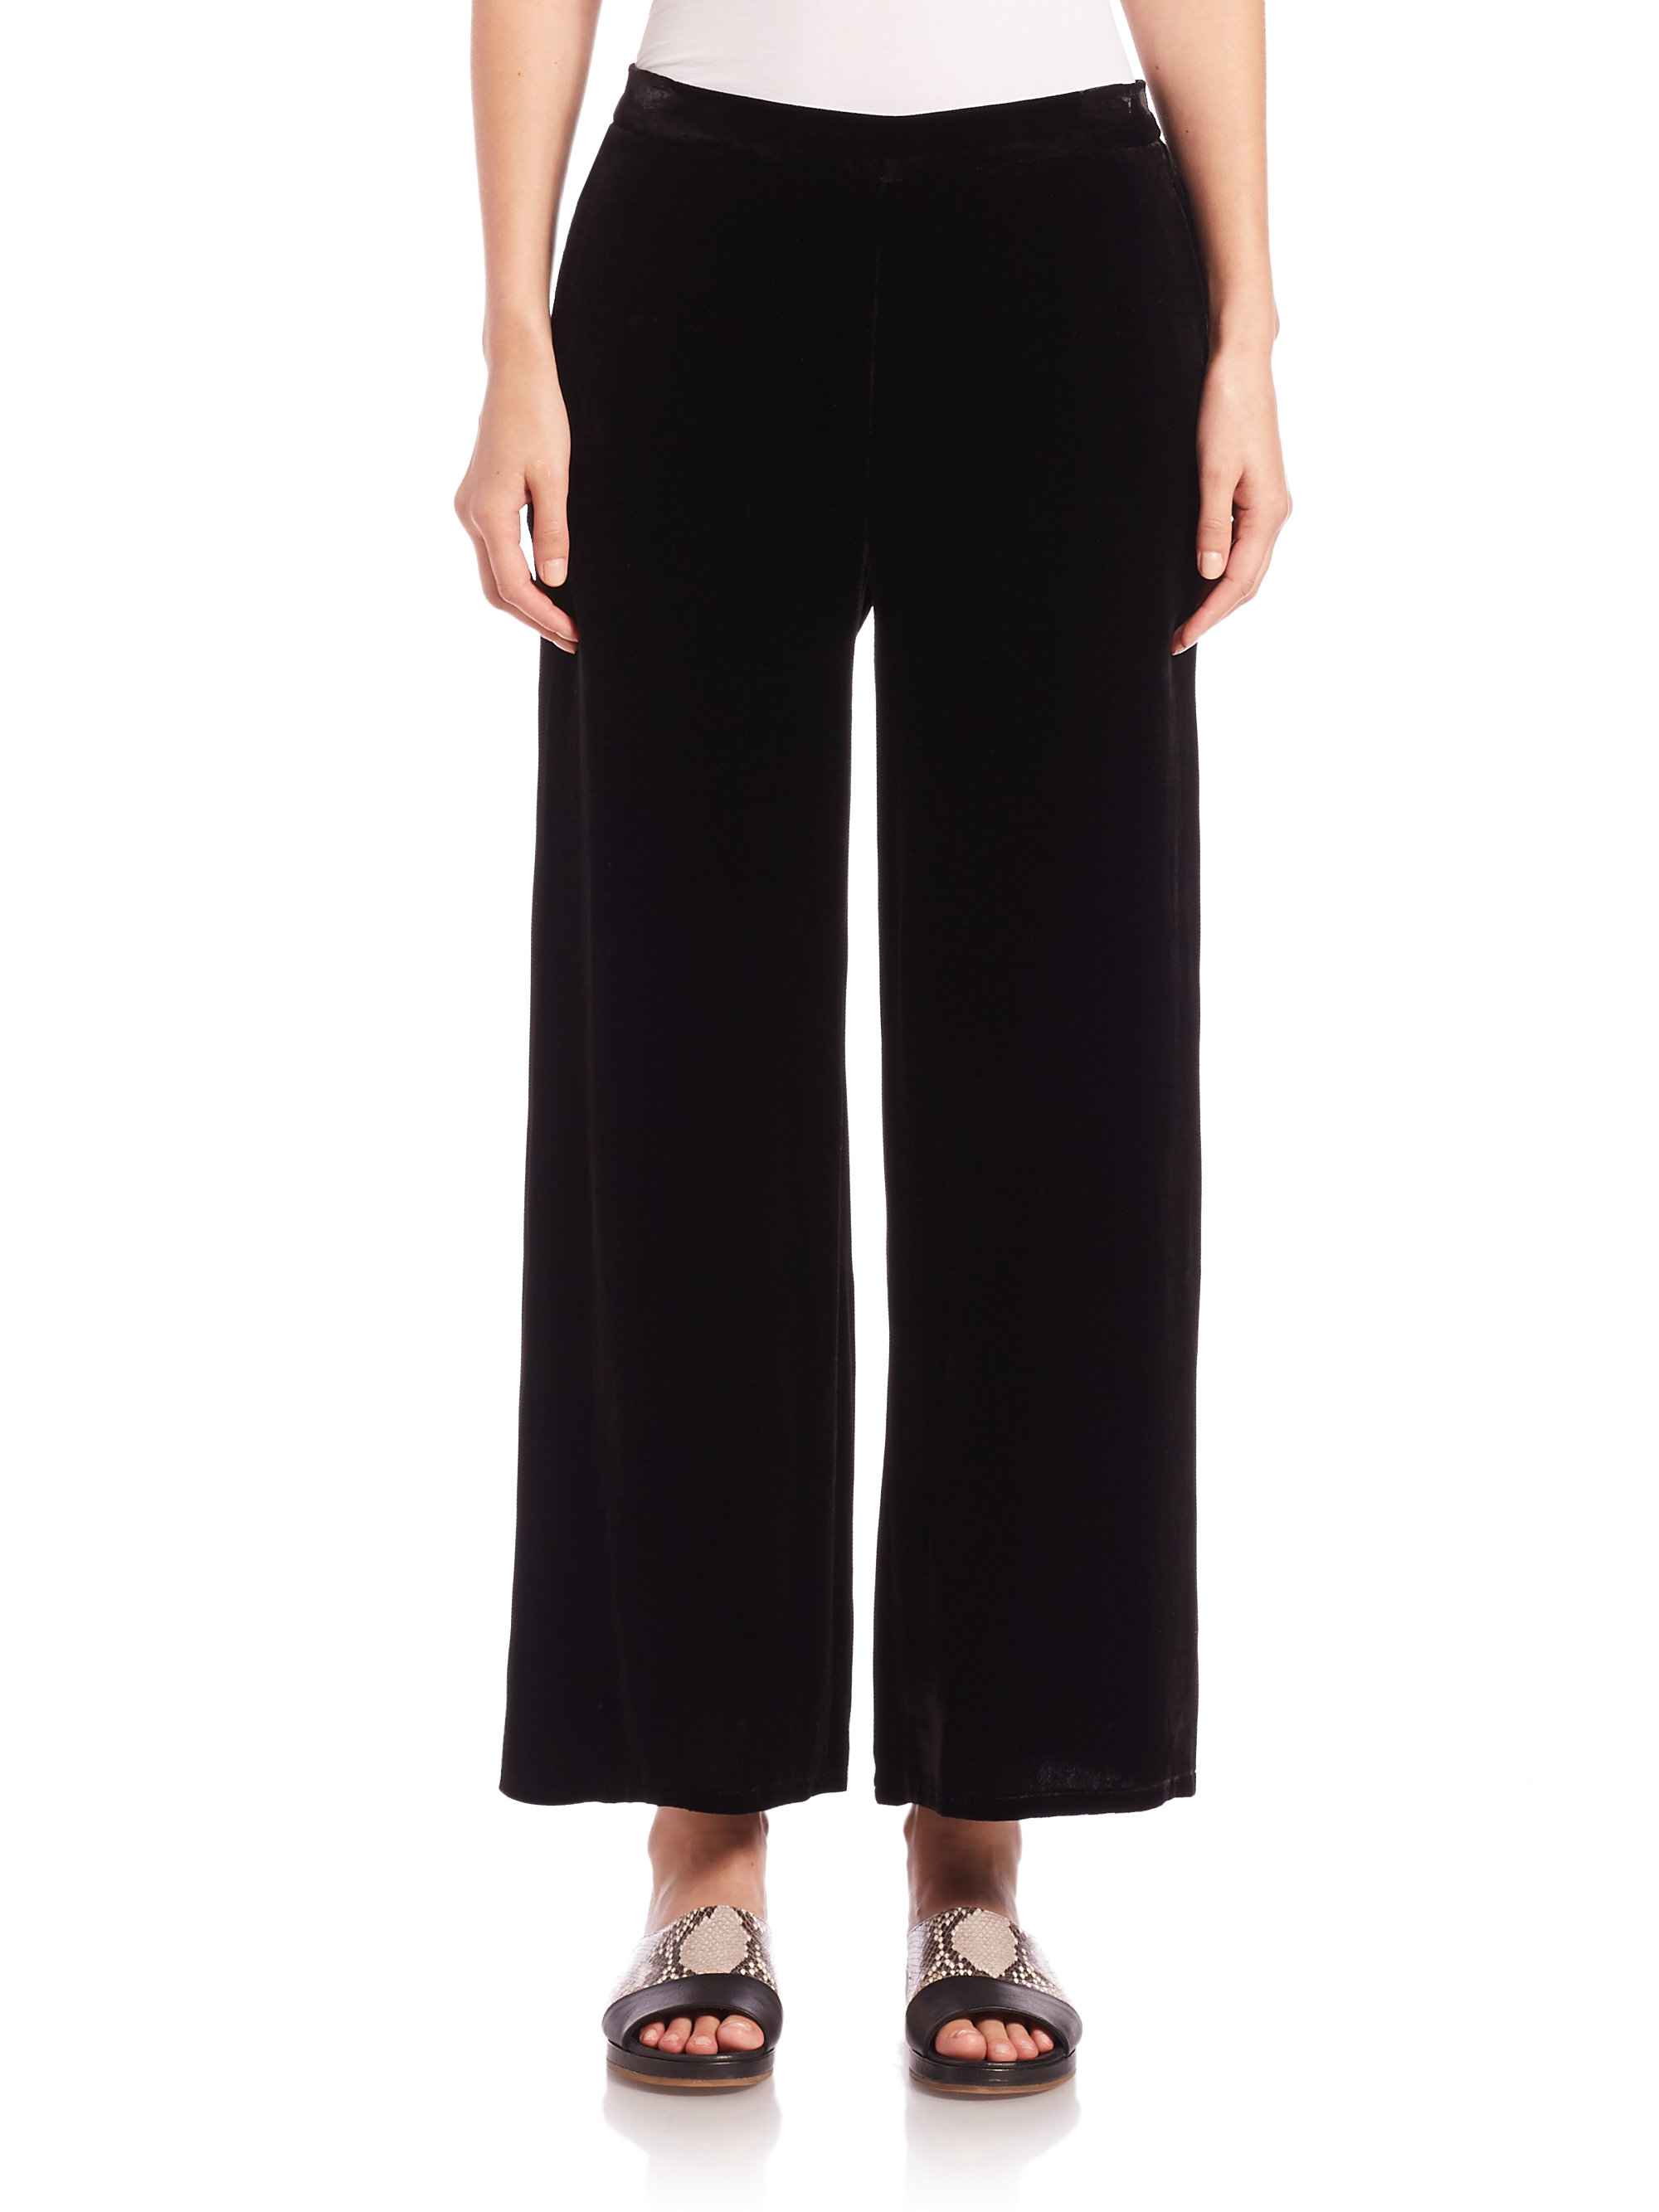 Lyst - Eileen Fisher Velvet Wide-leg Pants in Black